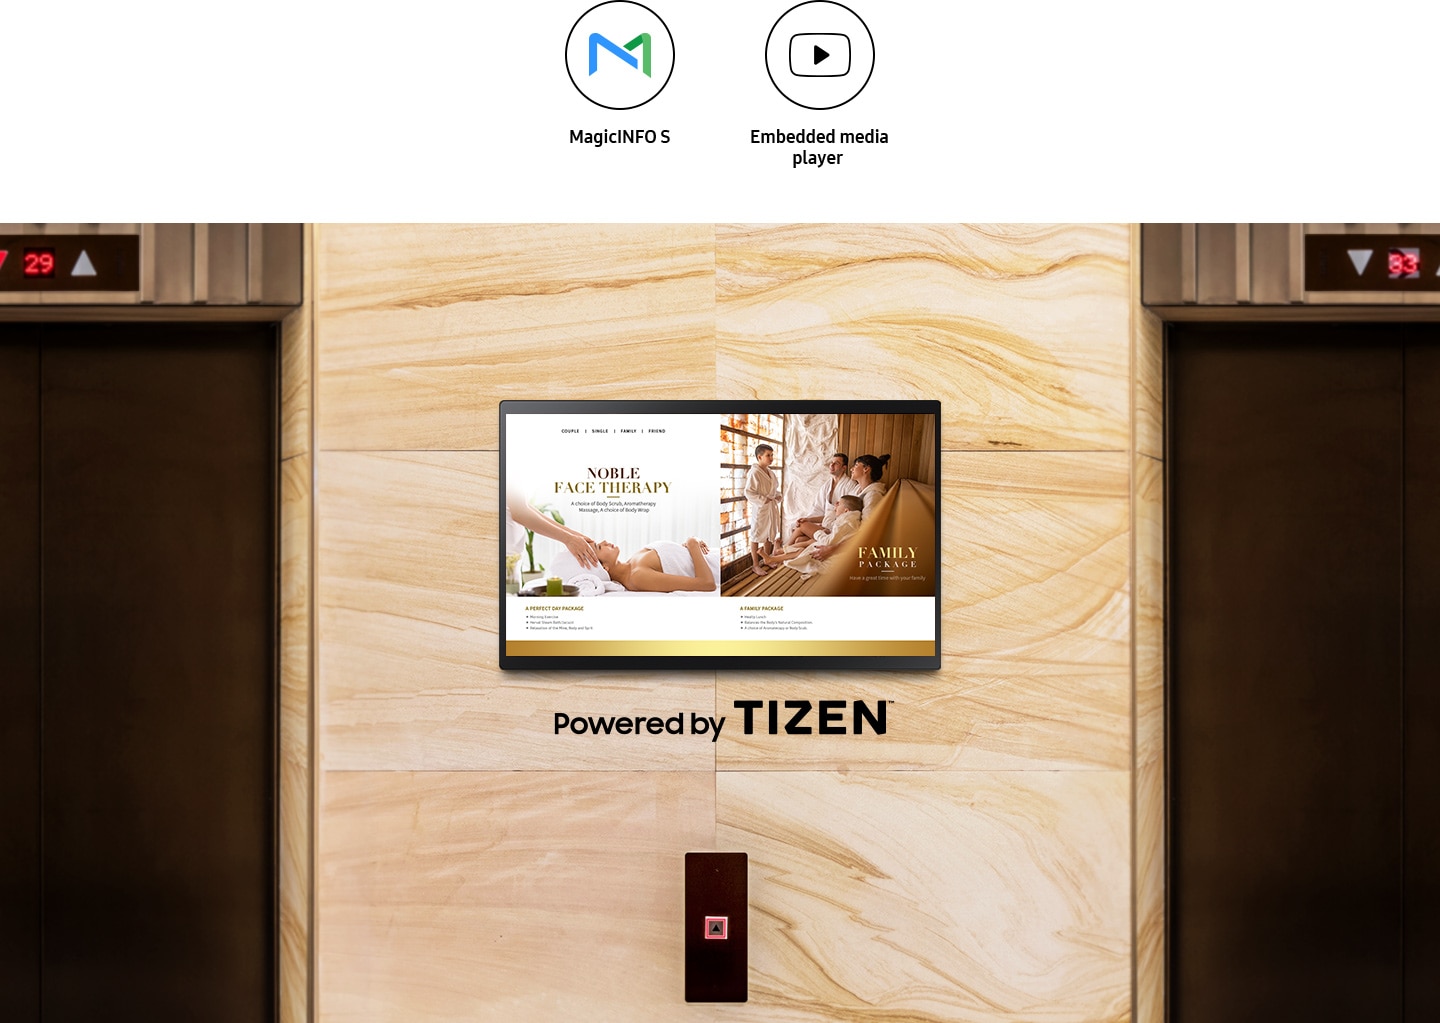 QB24R-TB се монтира на стена между два асансьора. Лого на Tizen, икони на MagicINFO S и Embedded media player са по-горе.